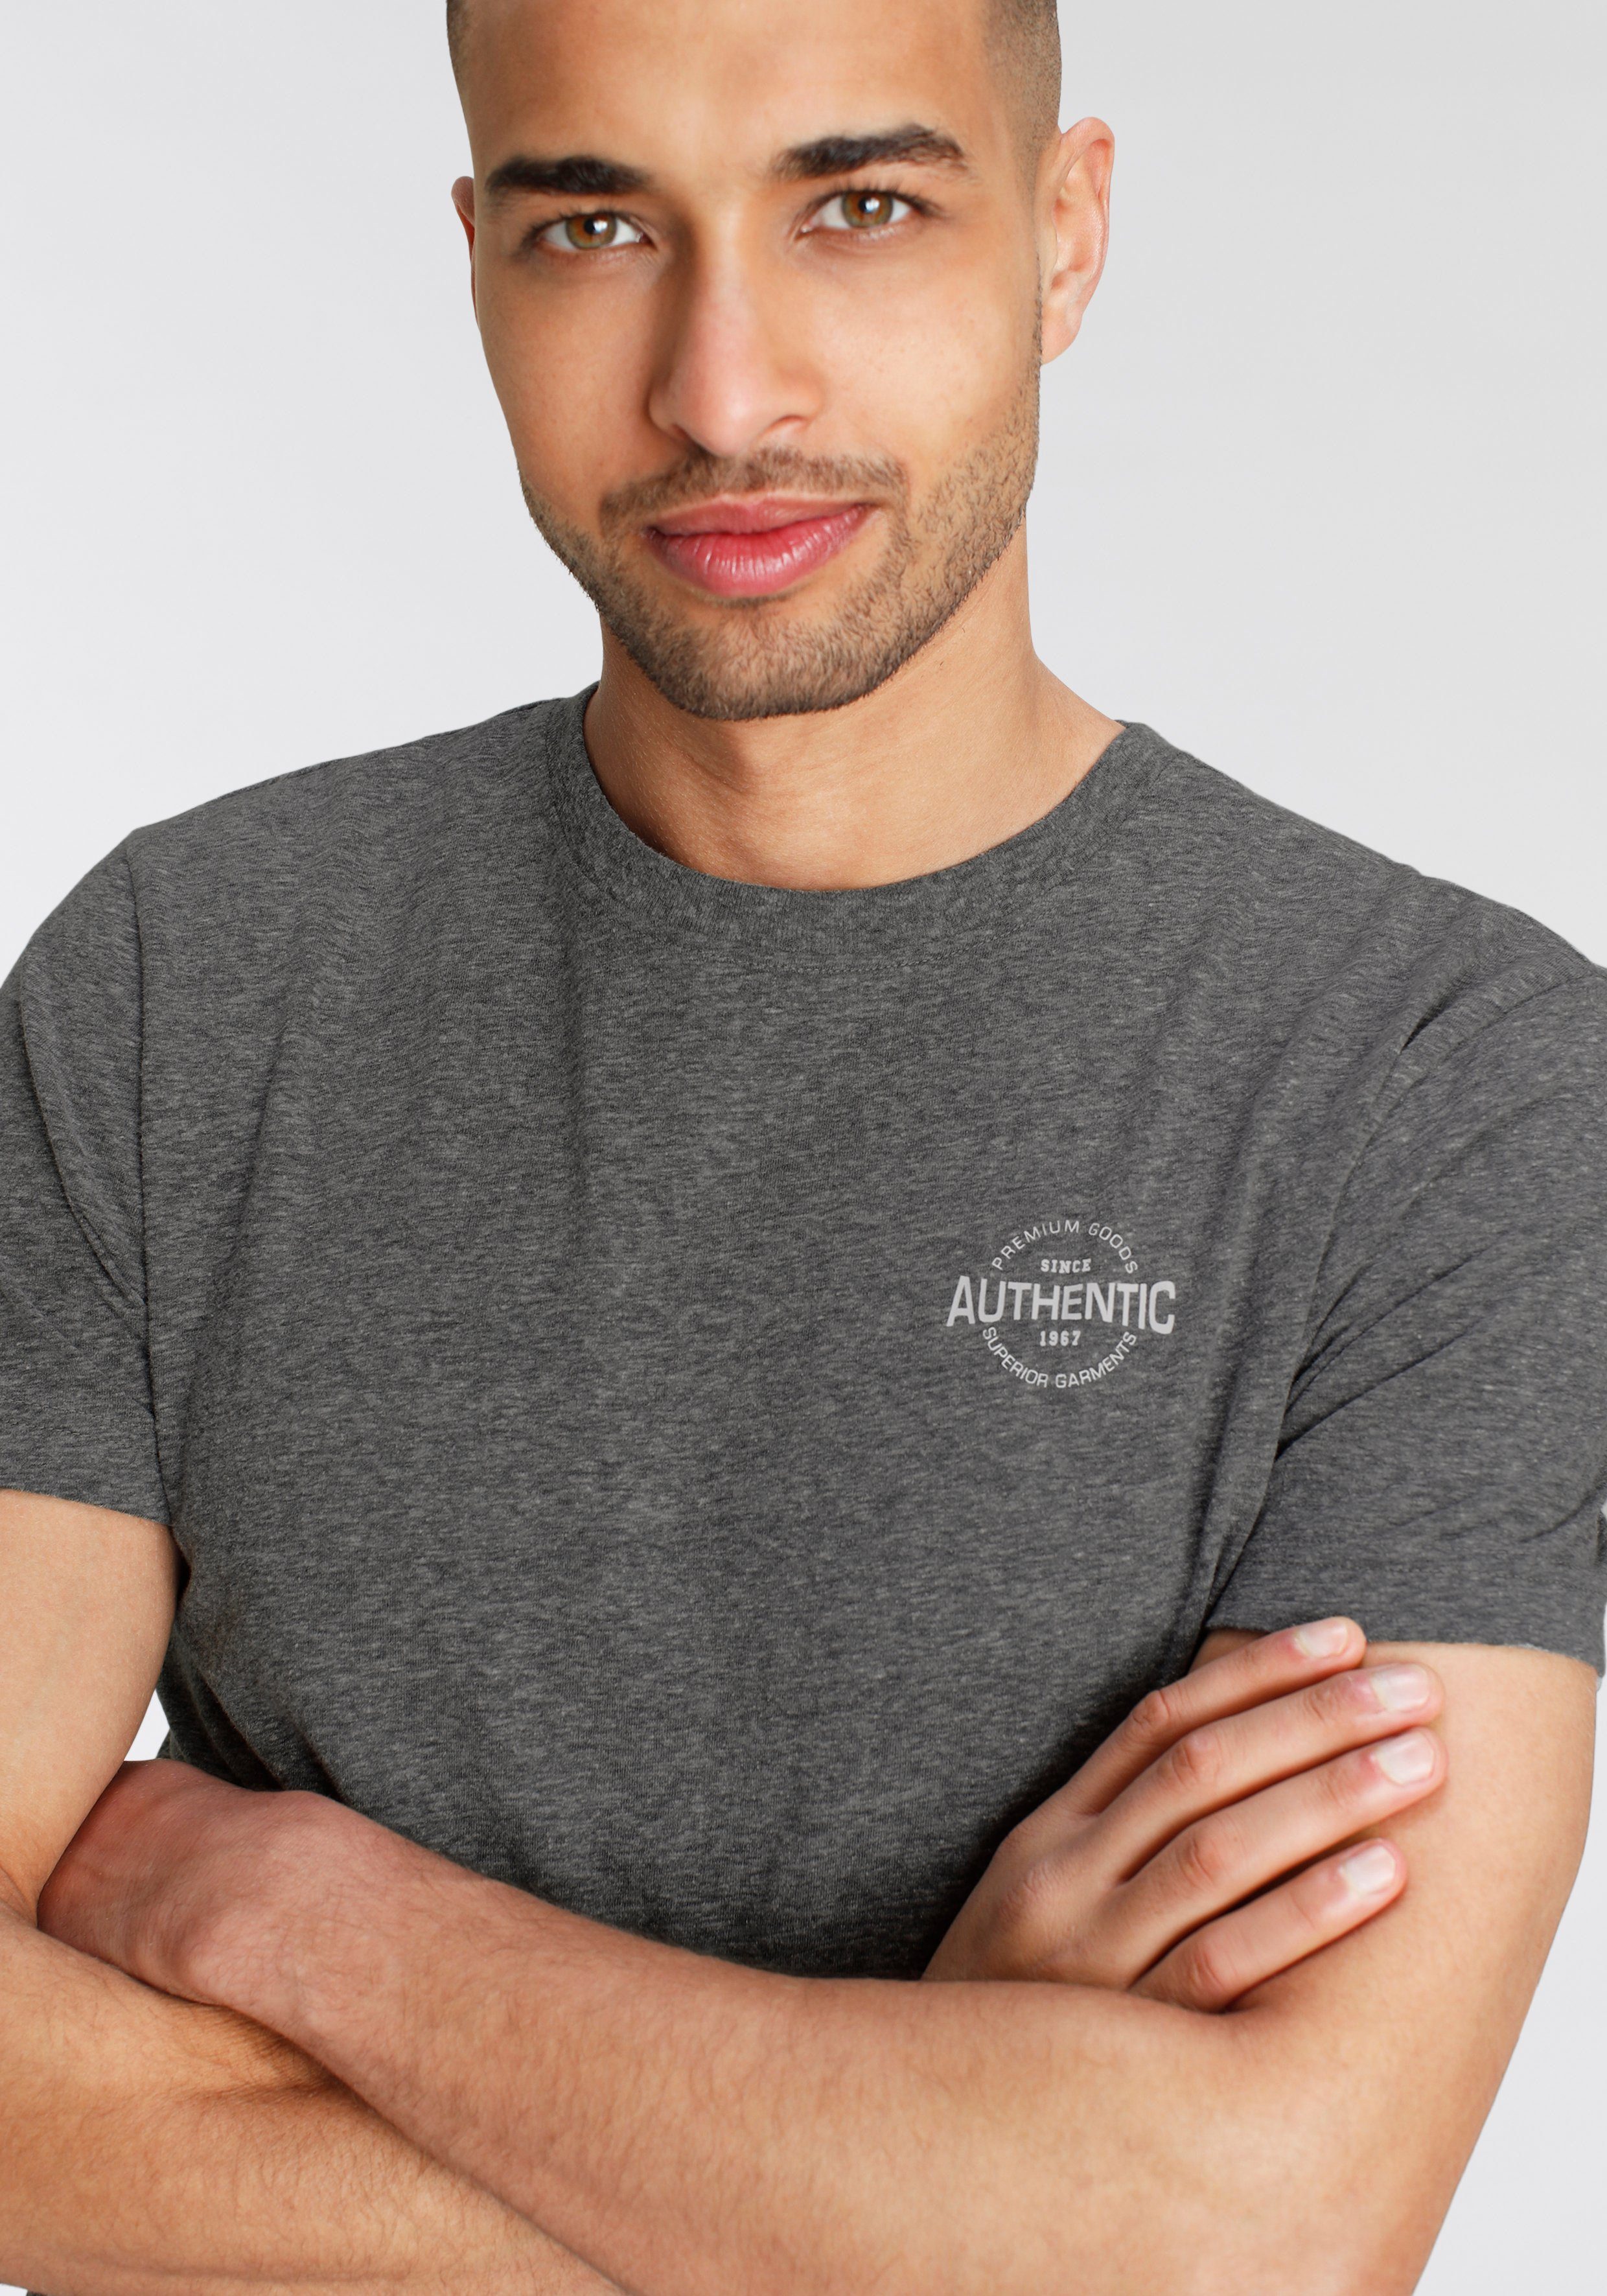 AJC T-Shirt in besonderer und Optik Print meliert Melange Logo anthrazit mit